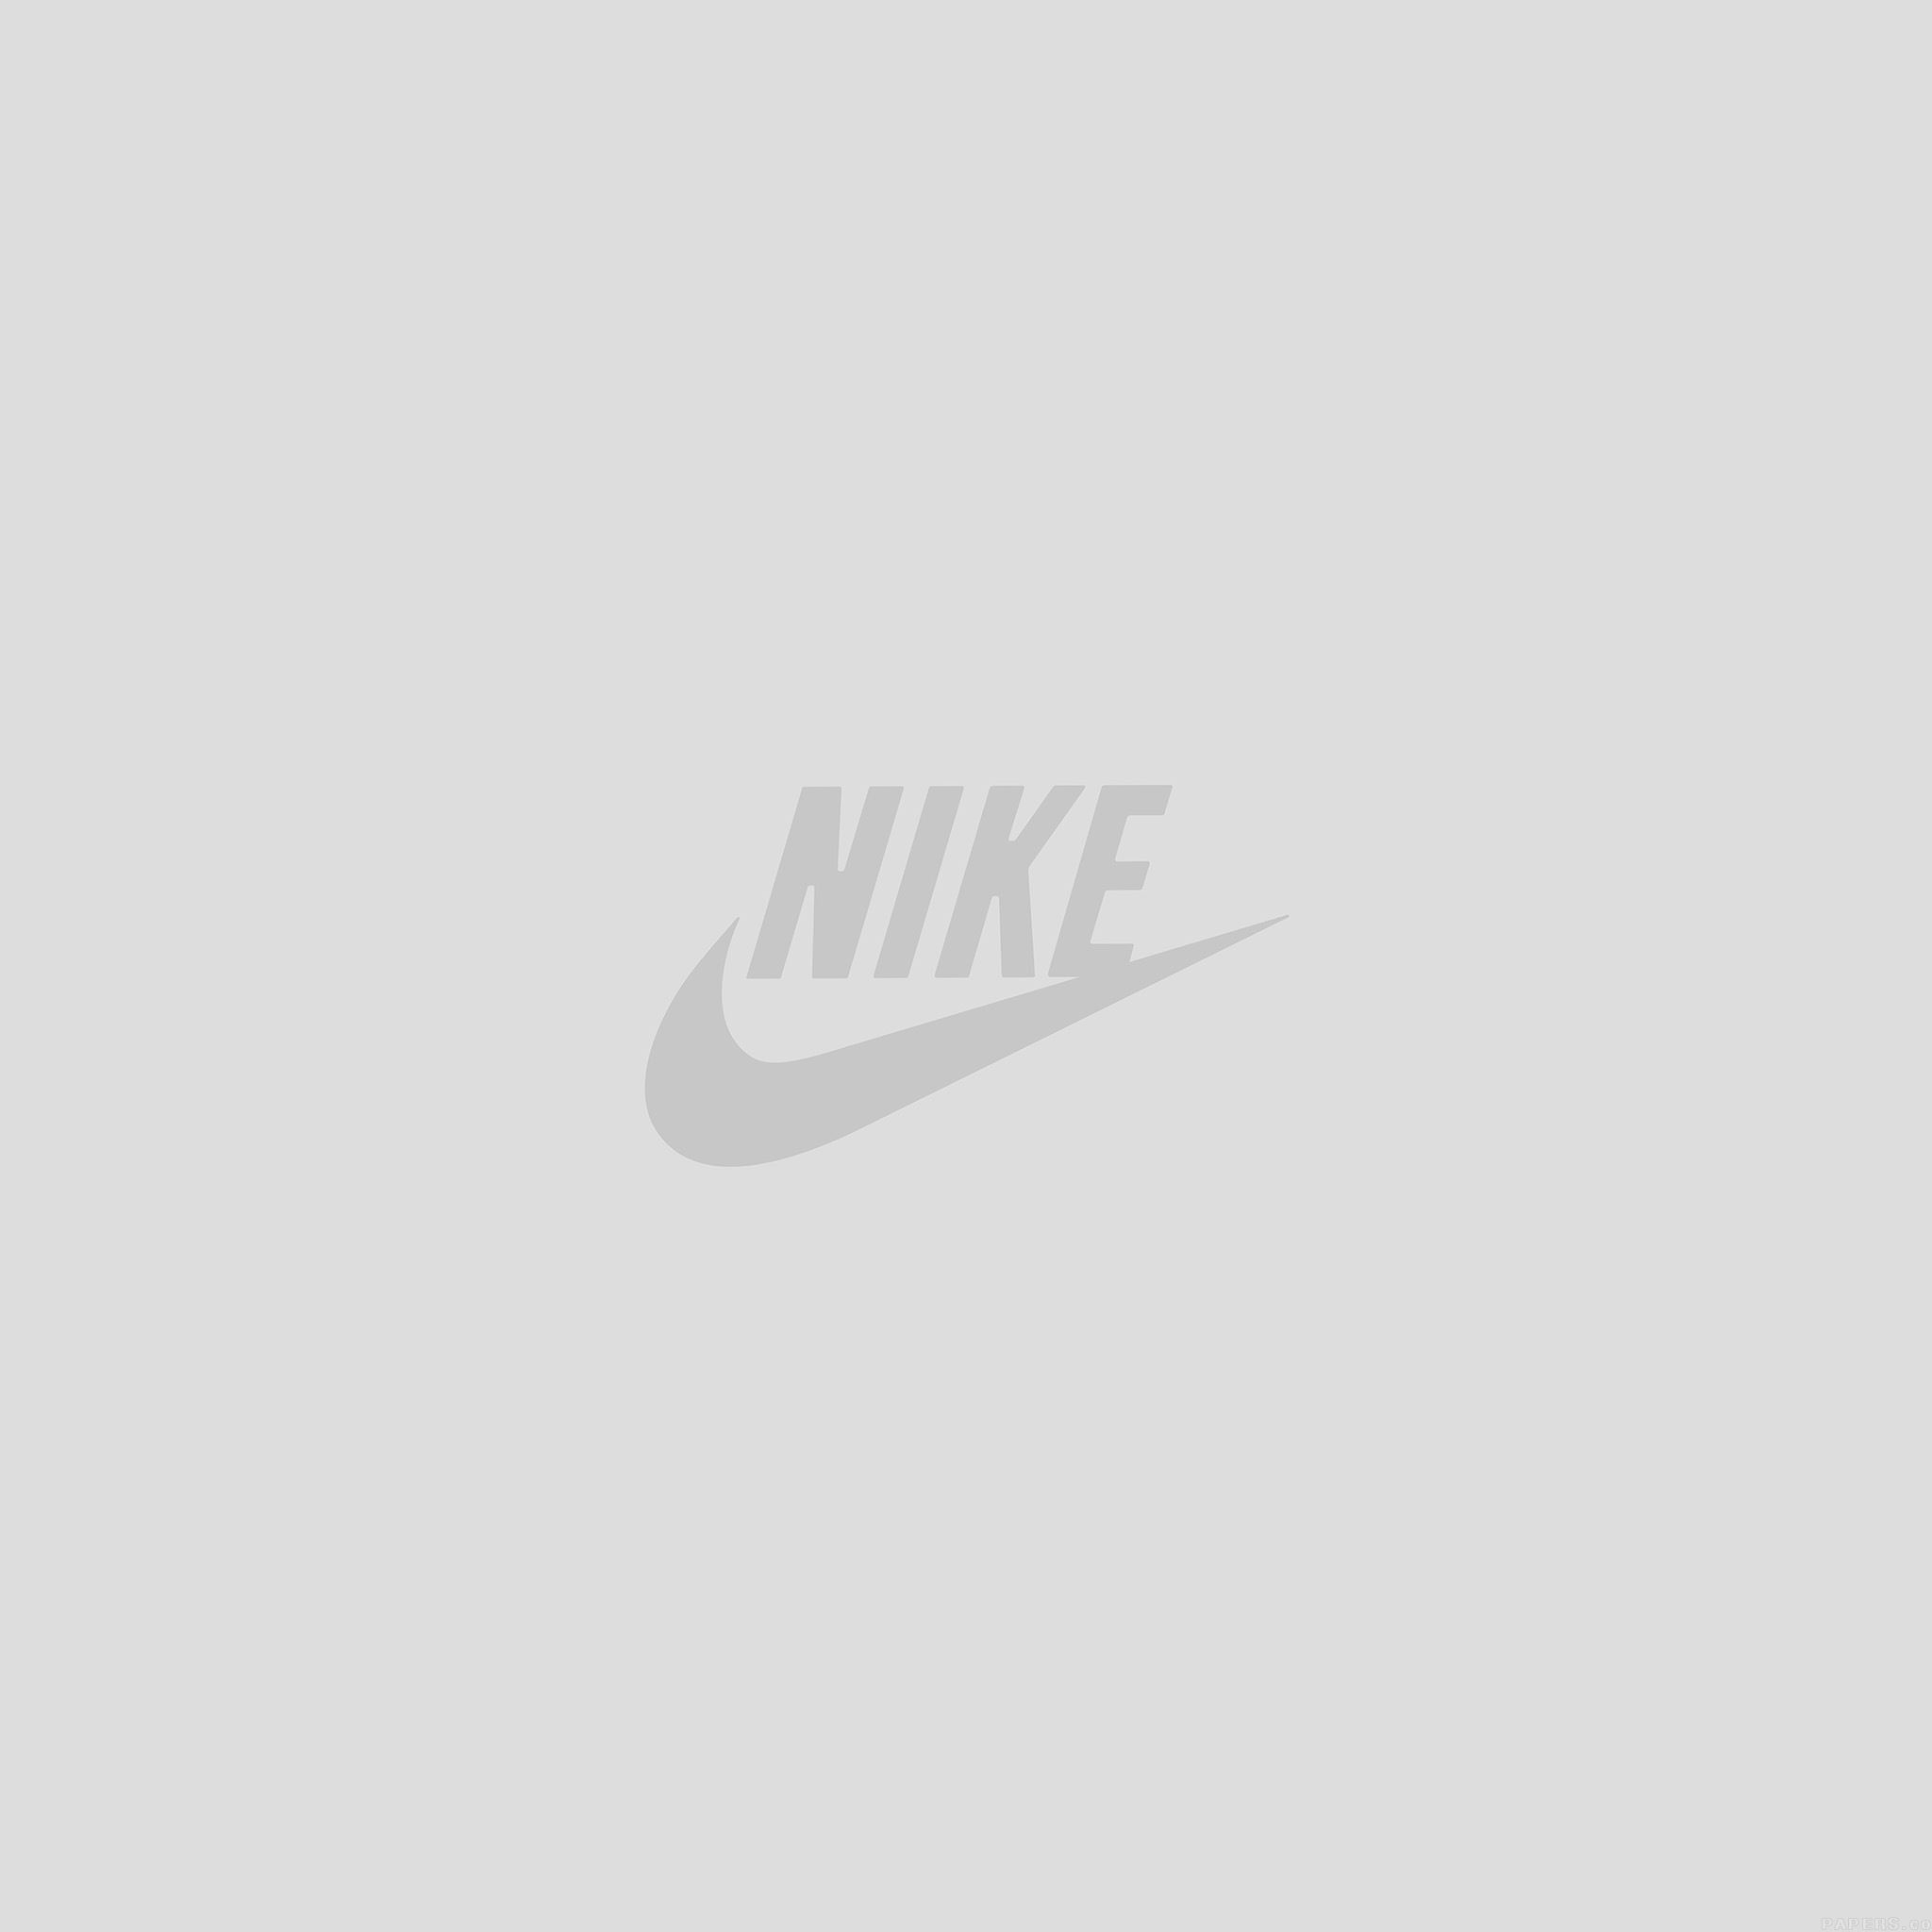 Nike Air Logo Wallpaper Iphone